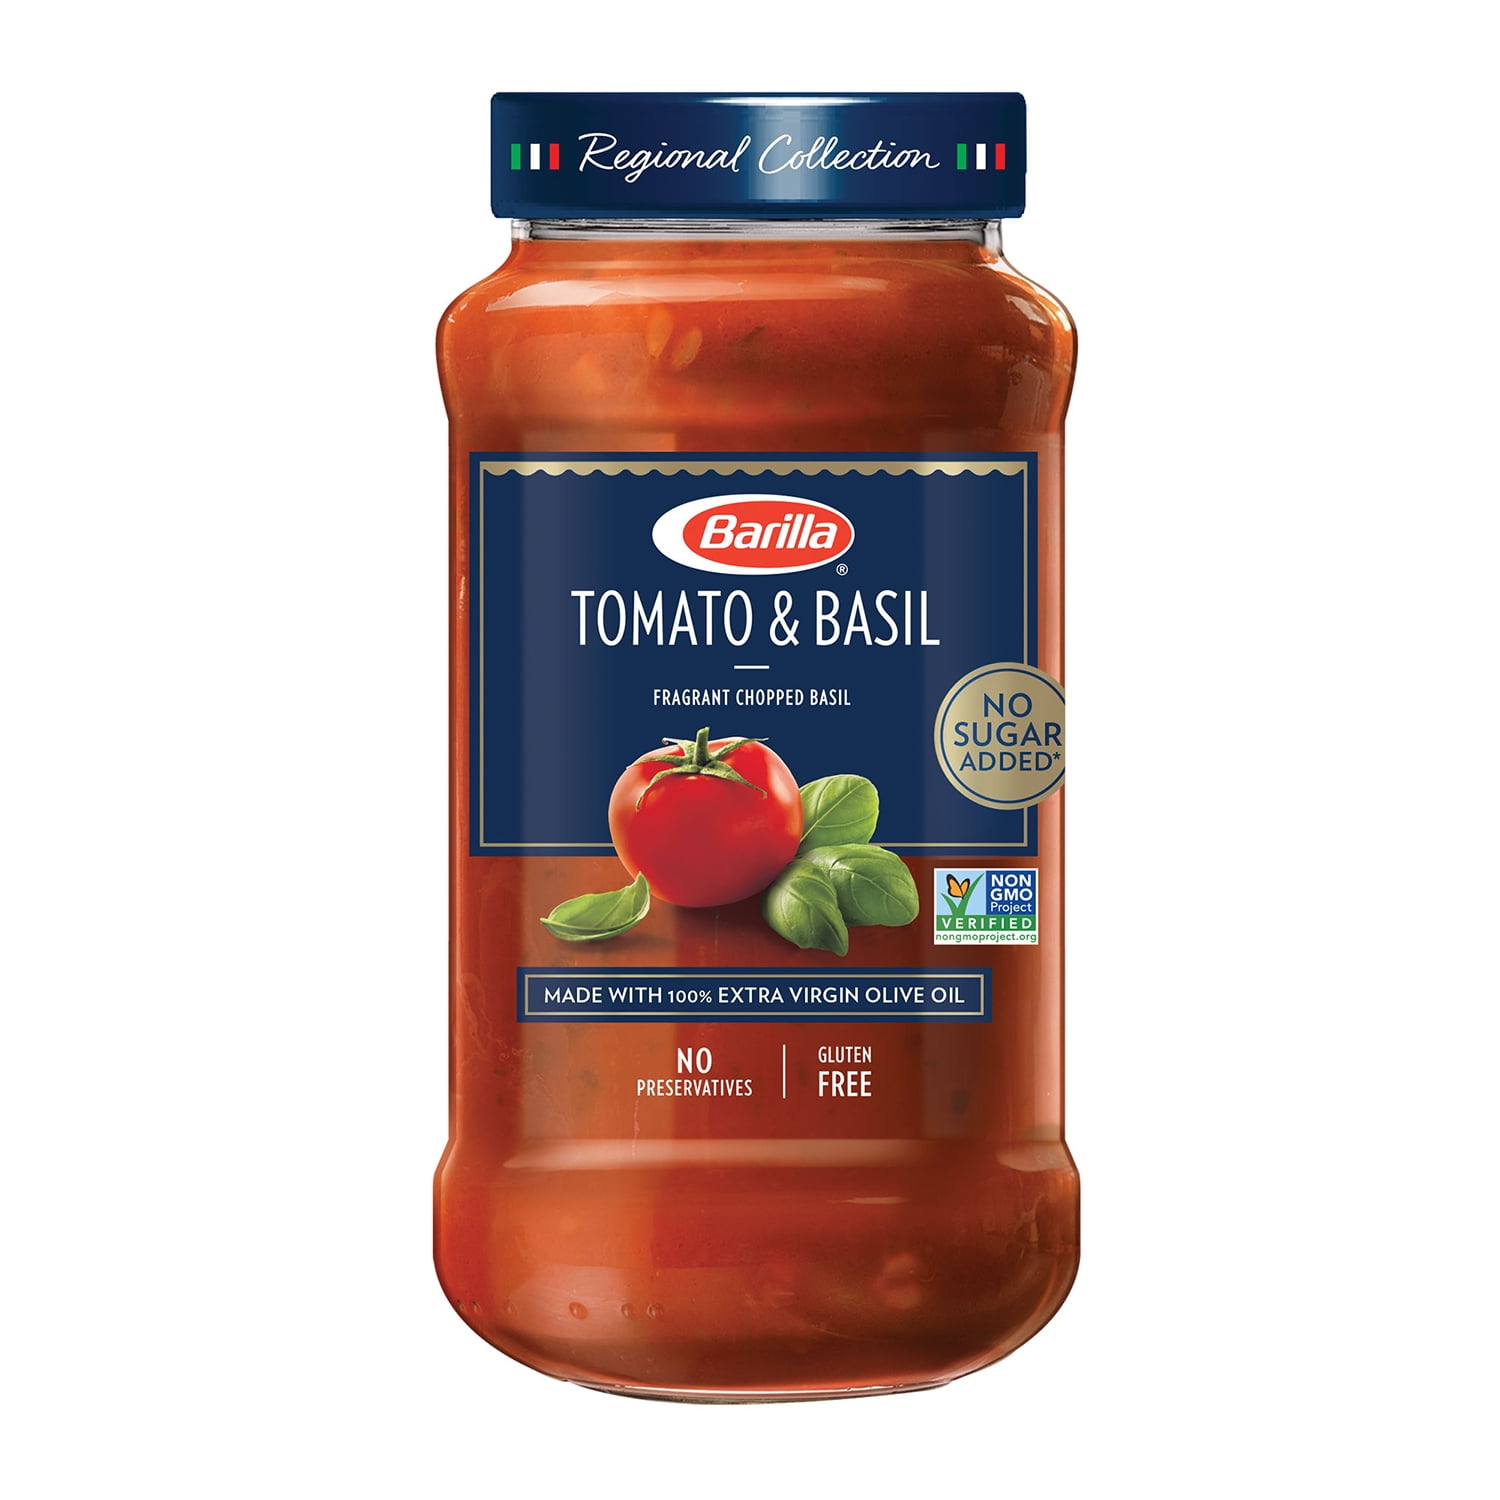 Barilla Tomato & Basil Sauce 24 oz